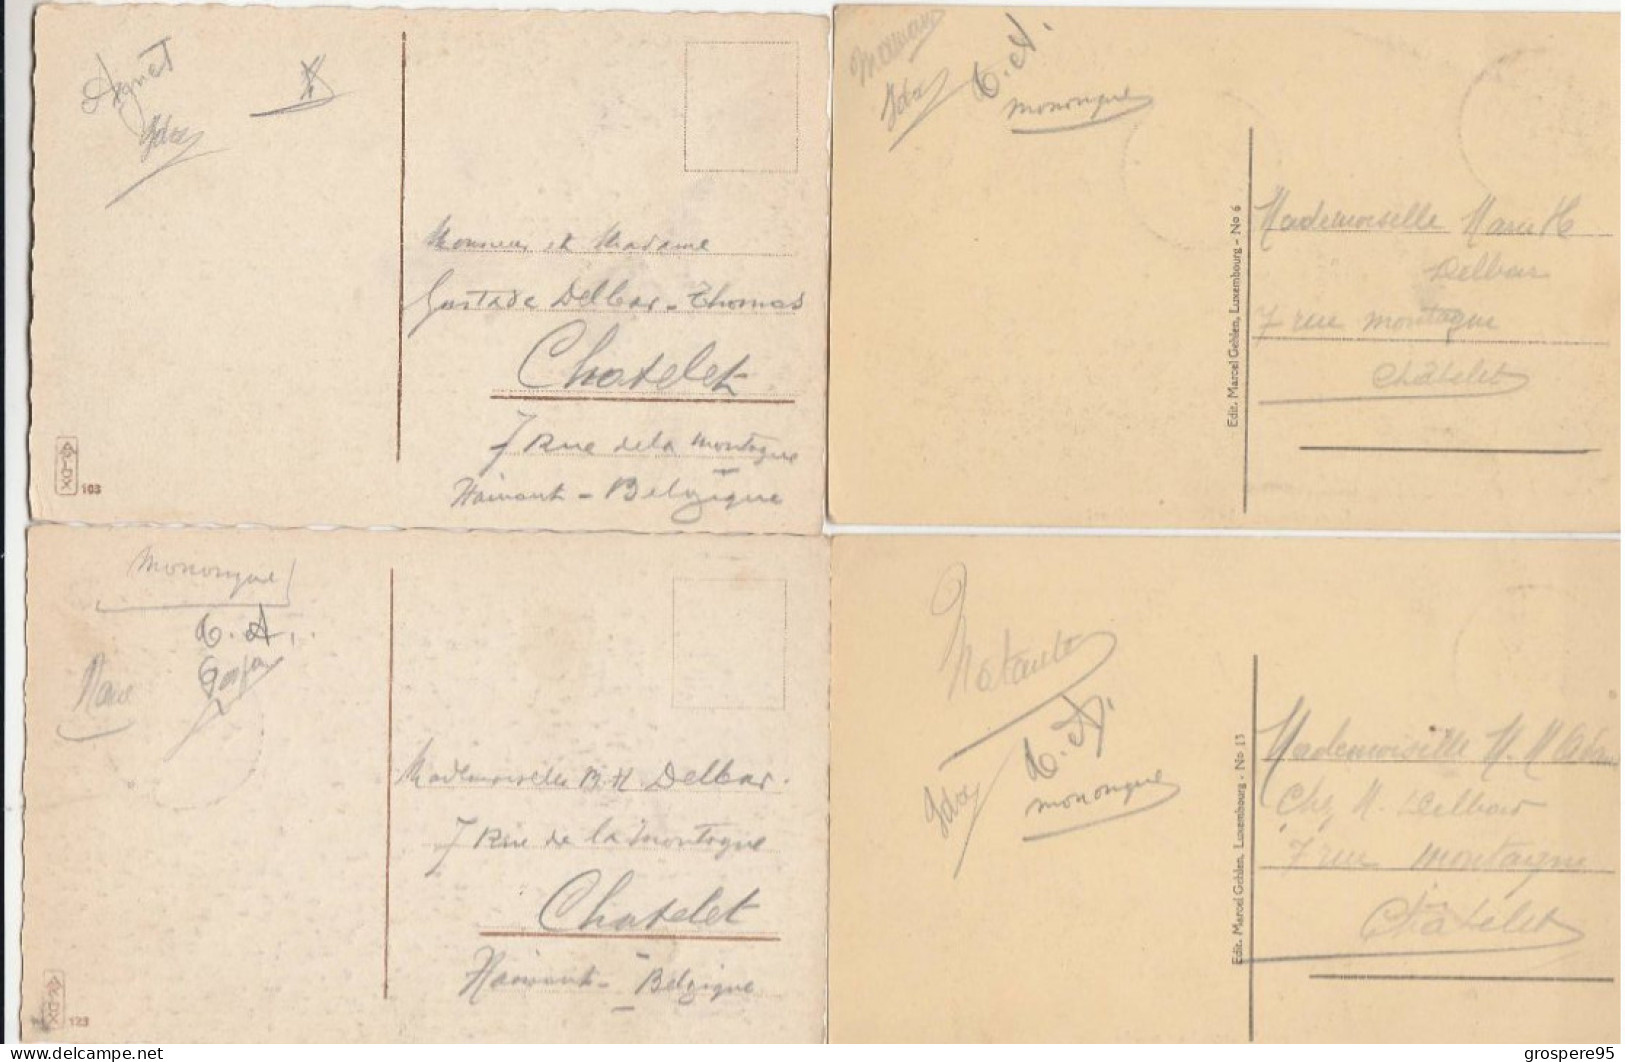 LUXEMBOURG PONT DU CHATEAU + PONT ADOLPHE + LA CORNICHE + LE PALAIS GRAND DUCAL 1934 - Colmar – Berg